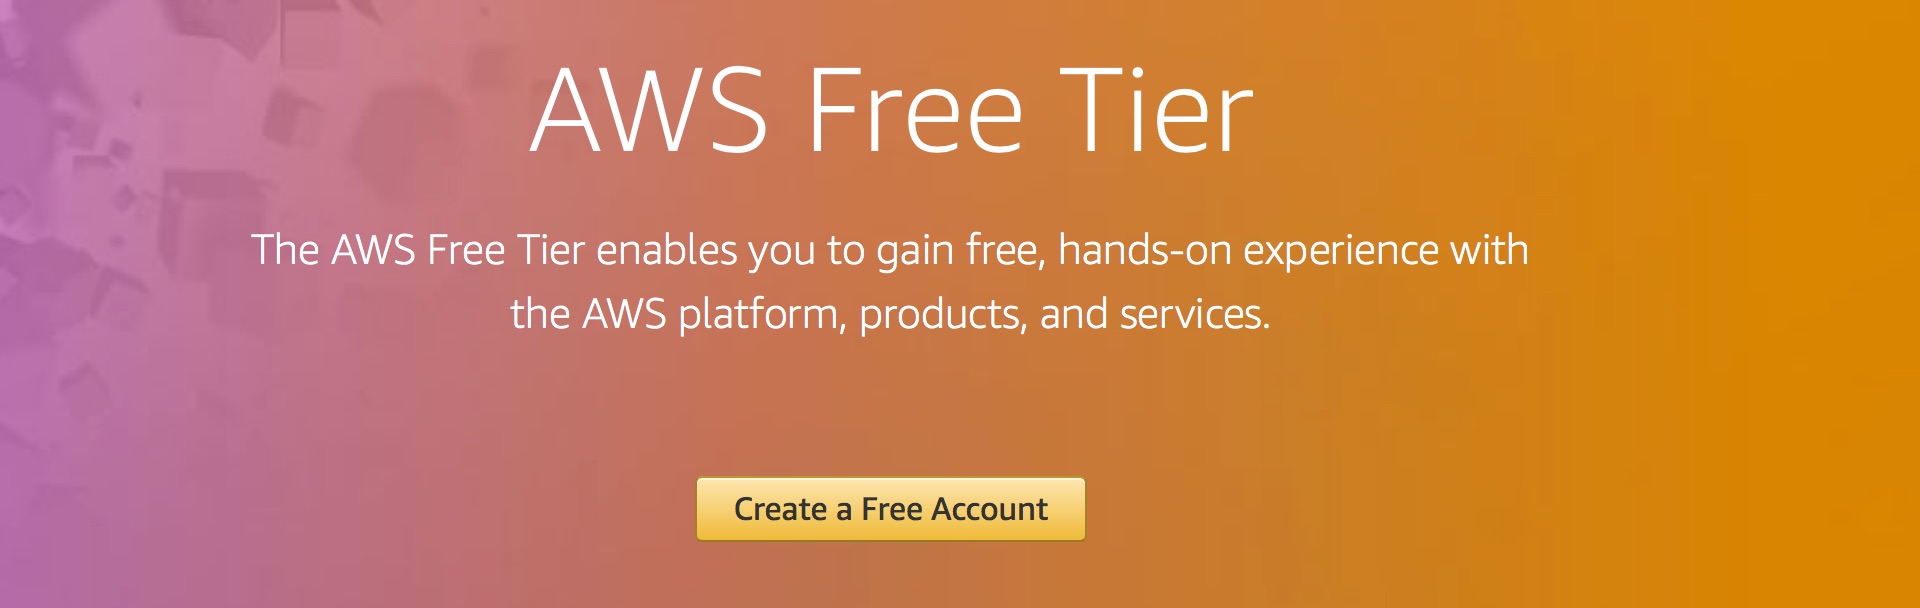 đăng ký aws free tier miễn phí